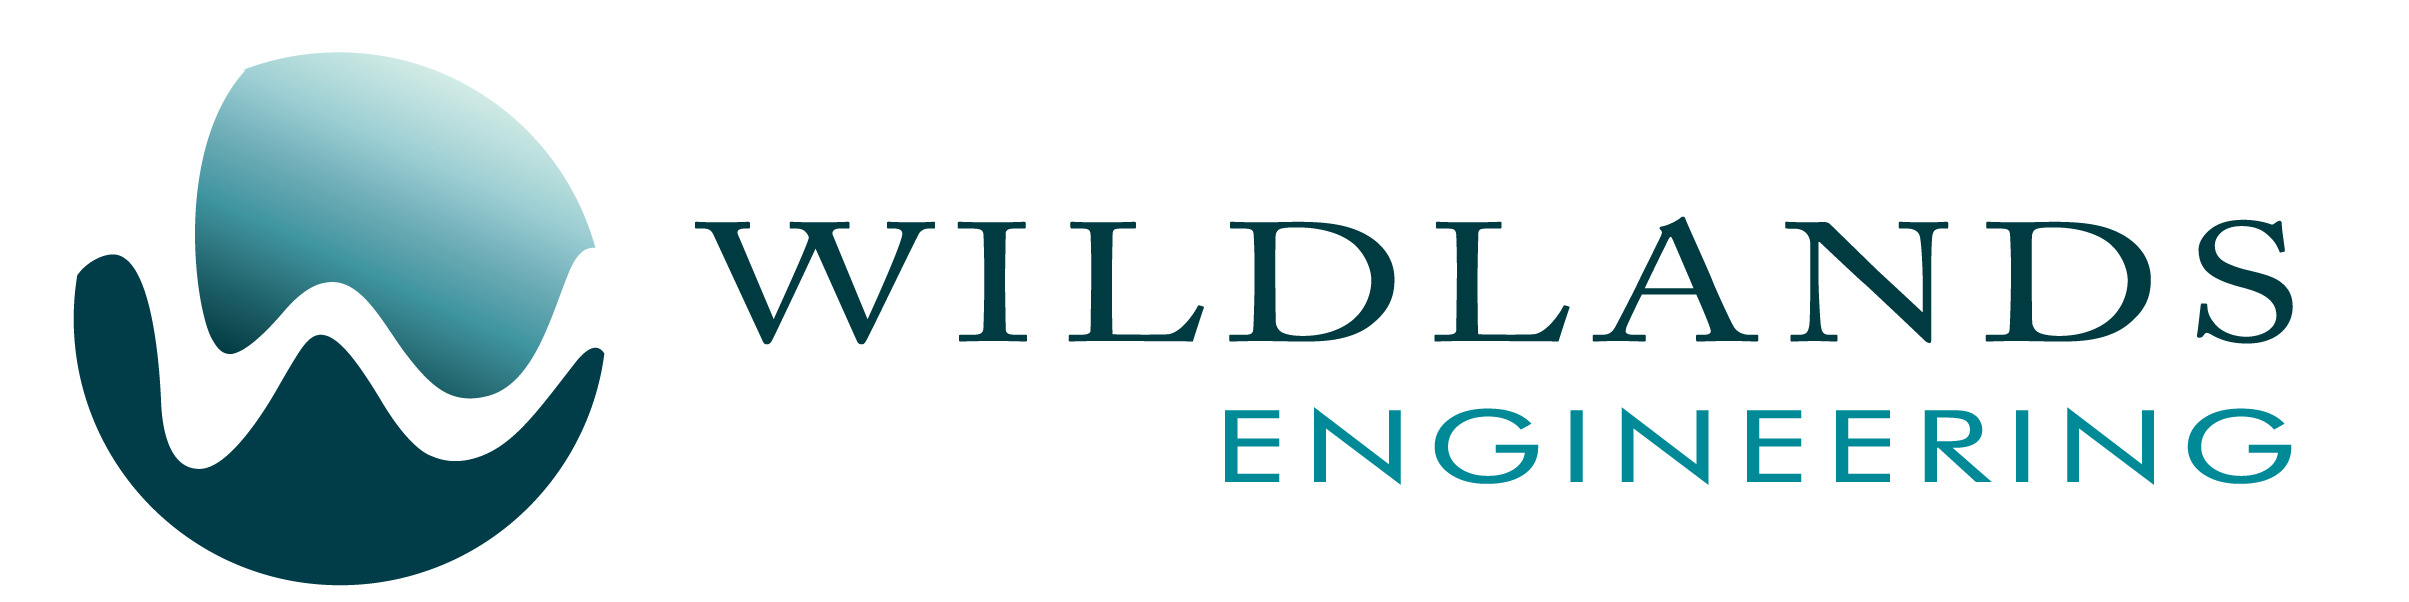 Wildlands Engineering Seeks Environmental Designer